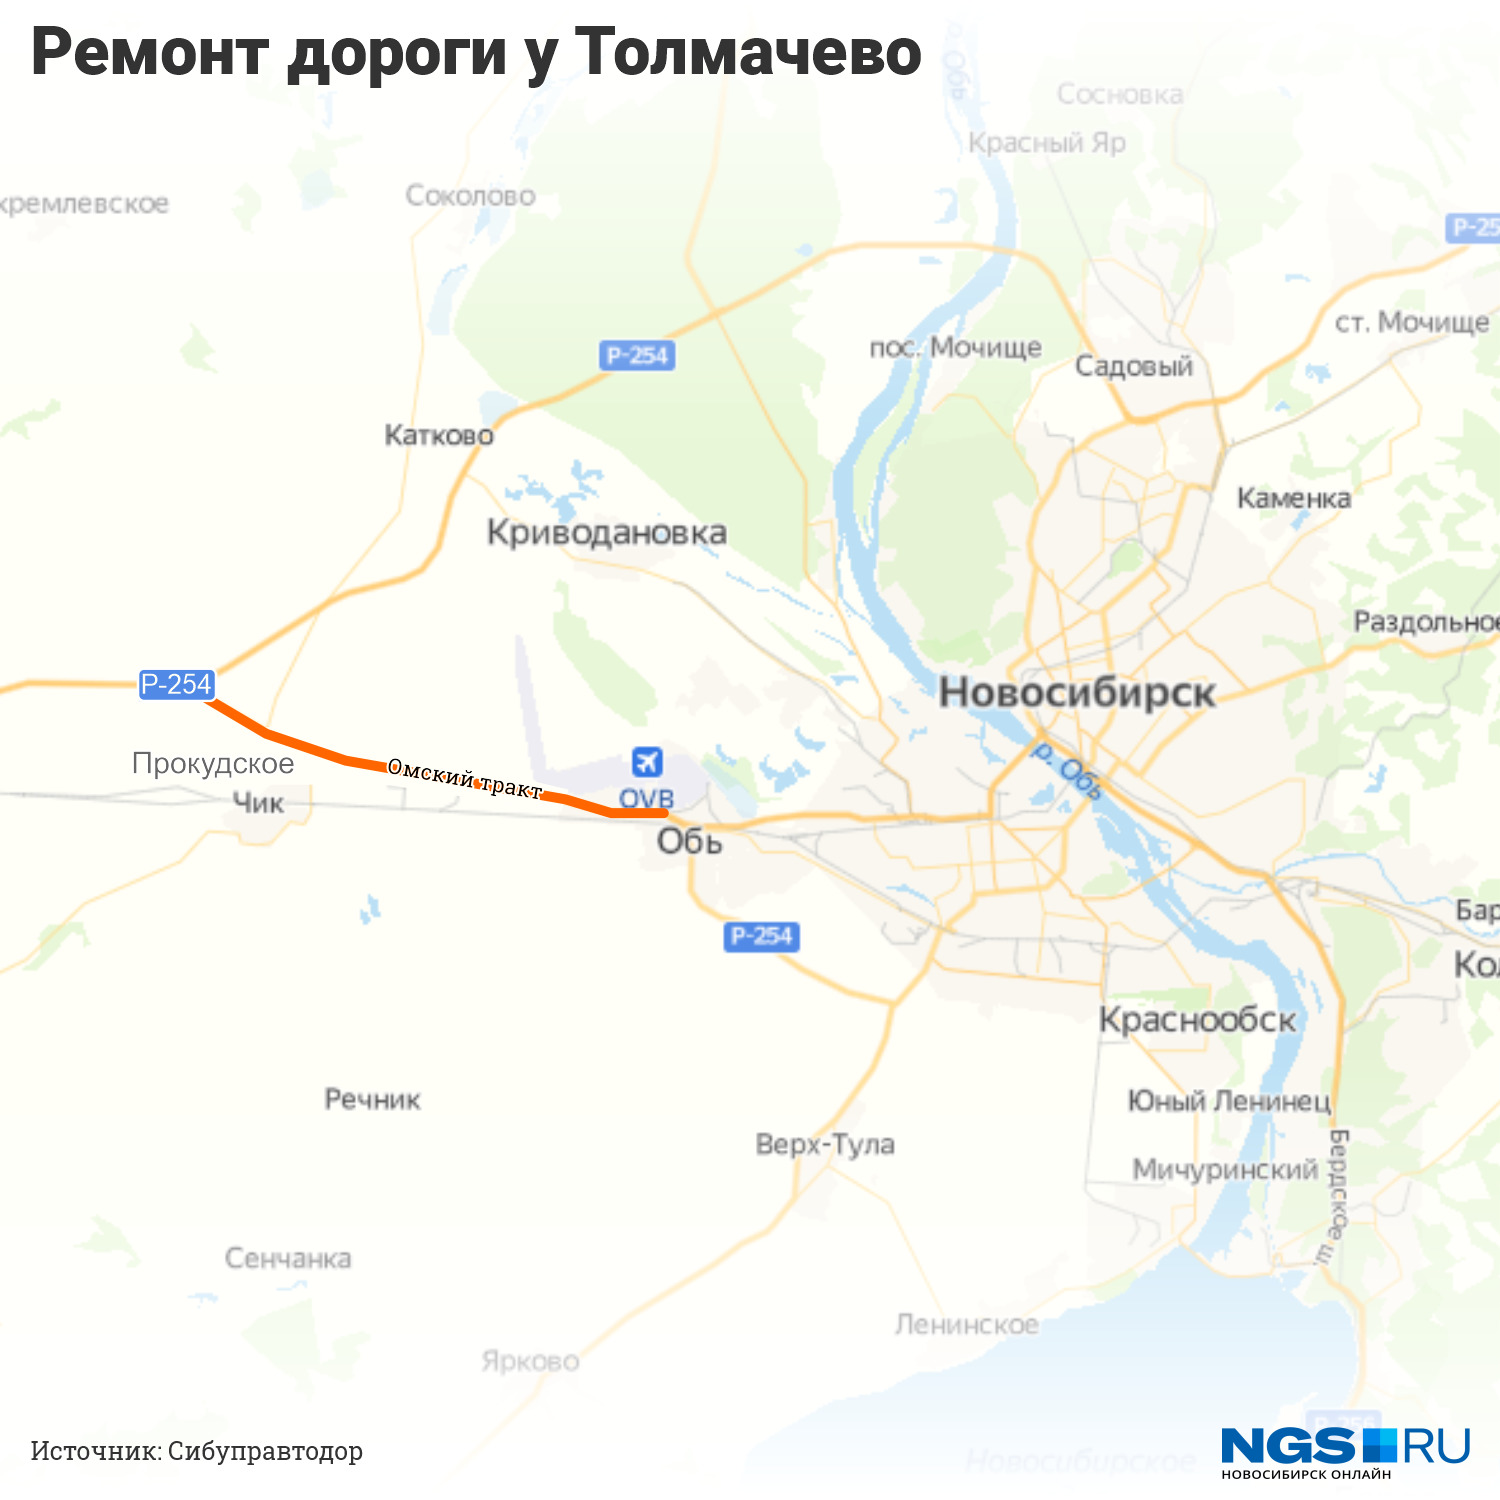 Аэропорт жд новосибирск как доехать. Карта аэропорта Толмачево Новосибирск. Толмачево на карте Новосибирска. Аэропорт Новосибирск на карте города. Аэропорт Толмачево Новосибирск на карте города.